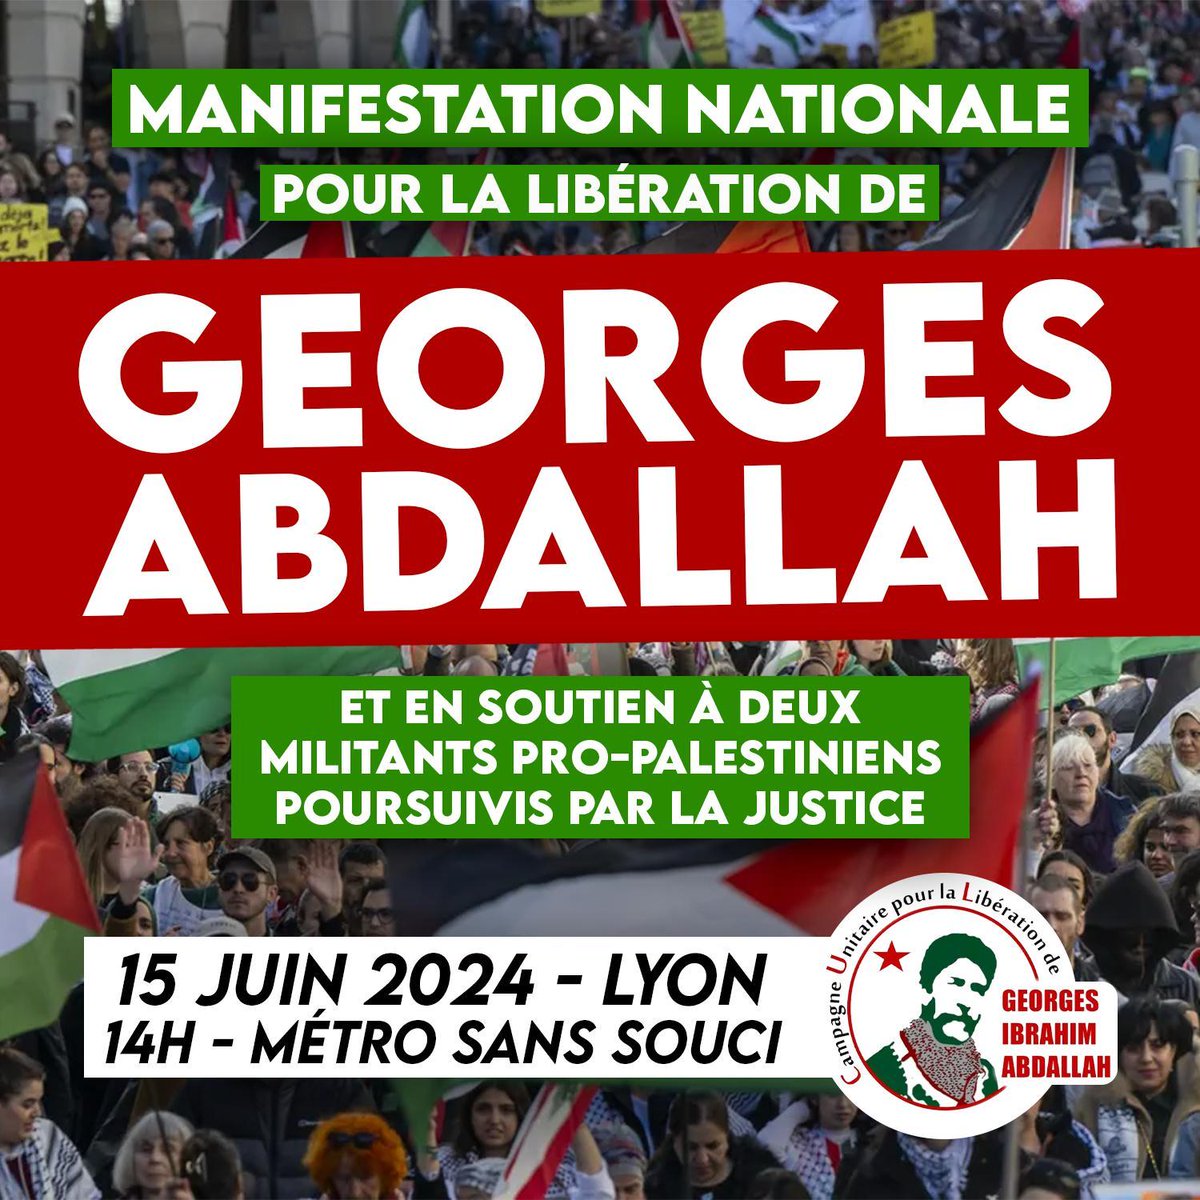 Après Lannemezan, faisons à nouveau entendre d’une seule et même voix notre détermination à voir Georges Abdallah libéré lors de la prochaine manifestation nationale organisée le 15 juin 2024 cette fois à Lyon où seront jugés le 18 juin deux camarades pro-palestiniens.